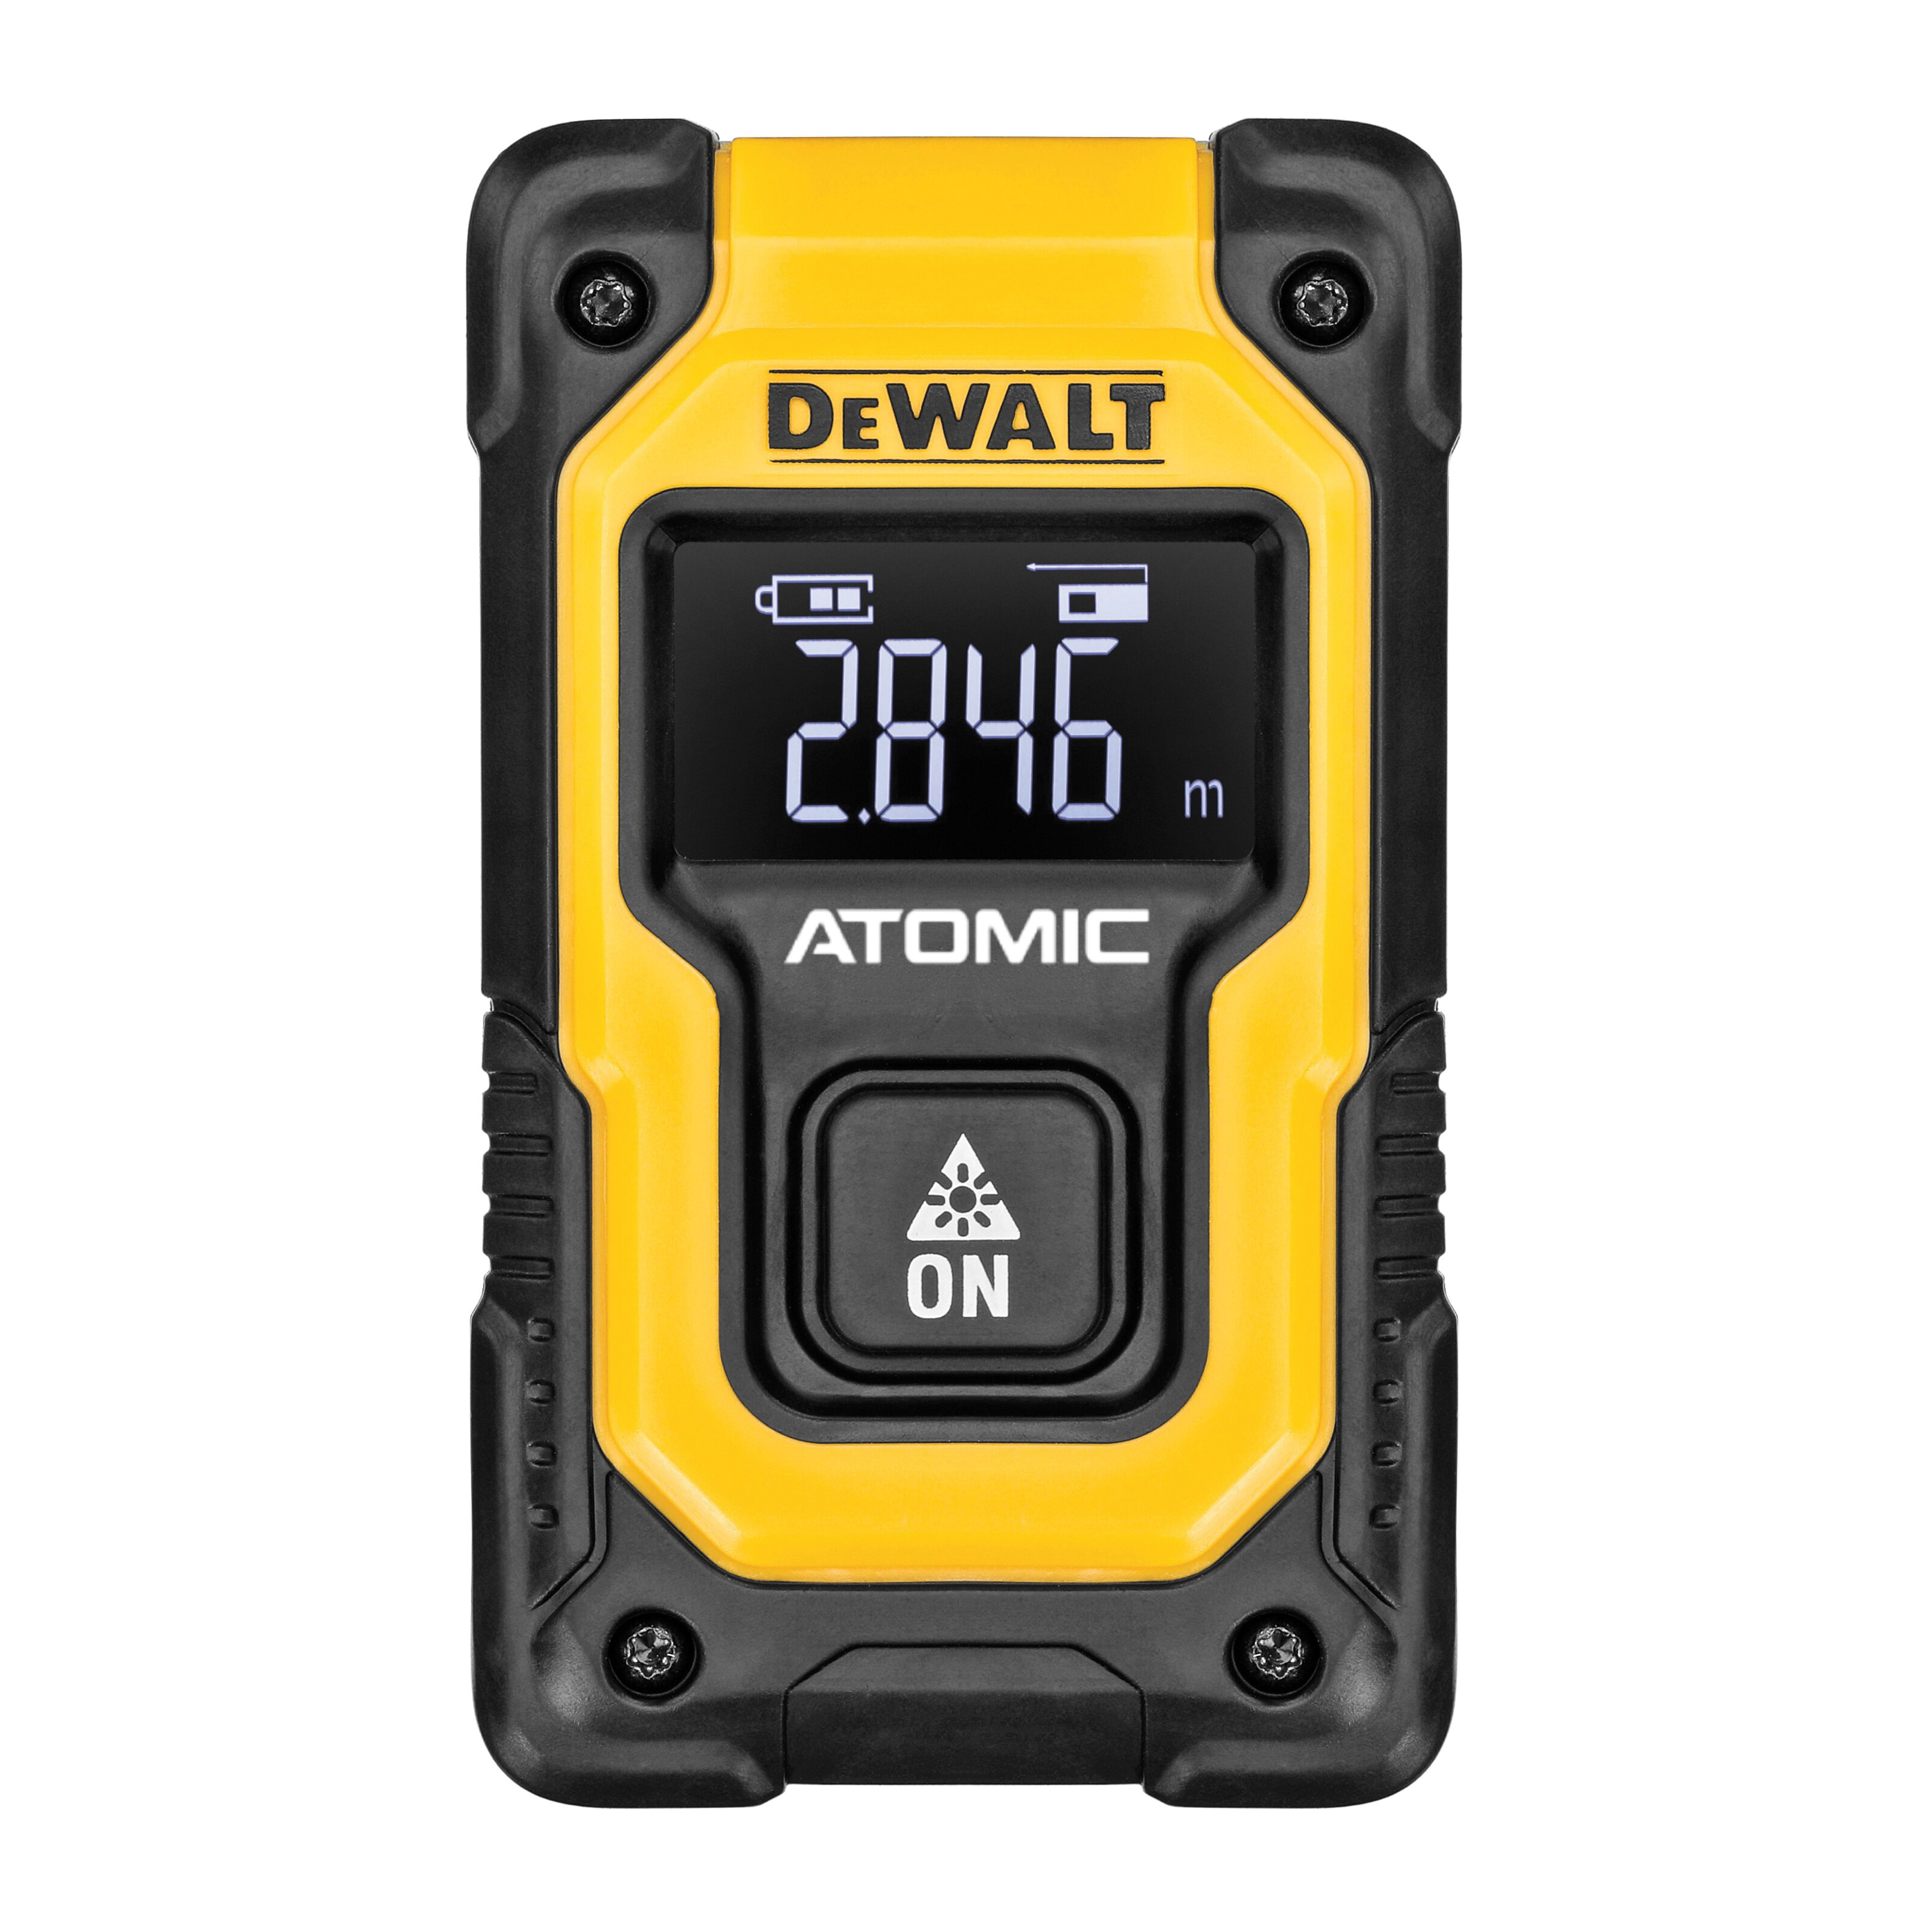 DeWALT Atomic Compact Series DW055PL Pocket Laser Distance Measurer, 55 ft, LCD Display - 3